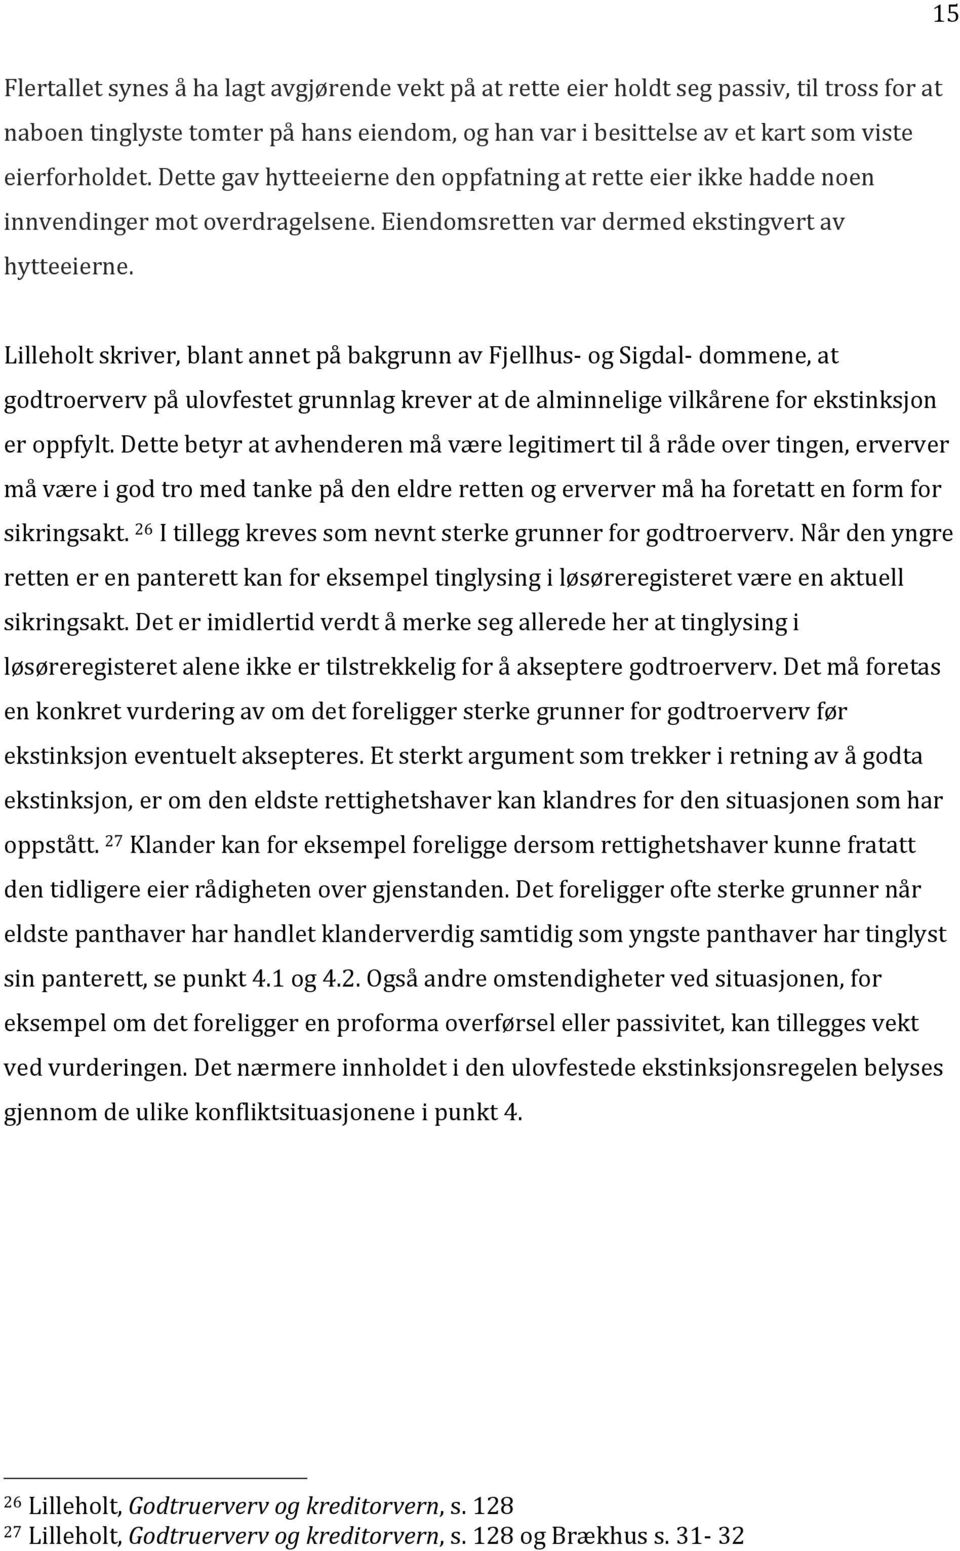 Lilleholt skriver, blant annet på bakgrunn av Fjellhus- og Sigdal- dommene, at godtroerverv på ulovfestet grunnlag krever at de alminnelige vilkårene for ekstinksjon er oppfylt.